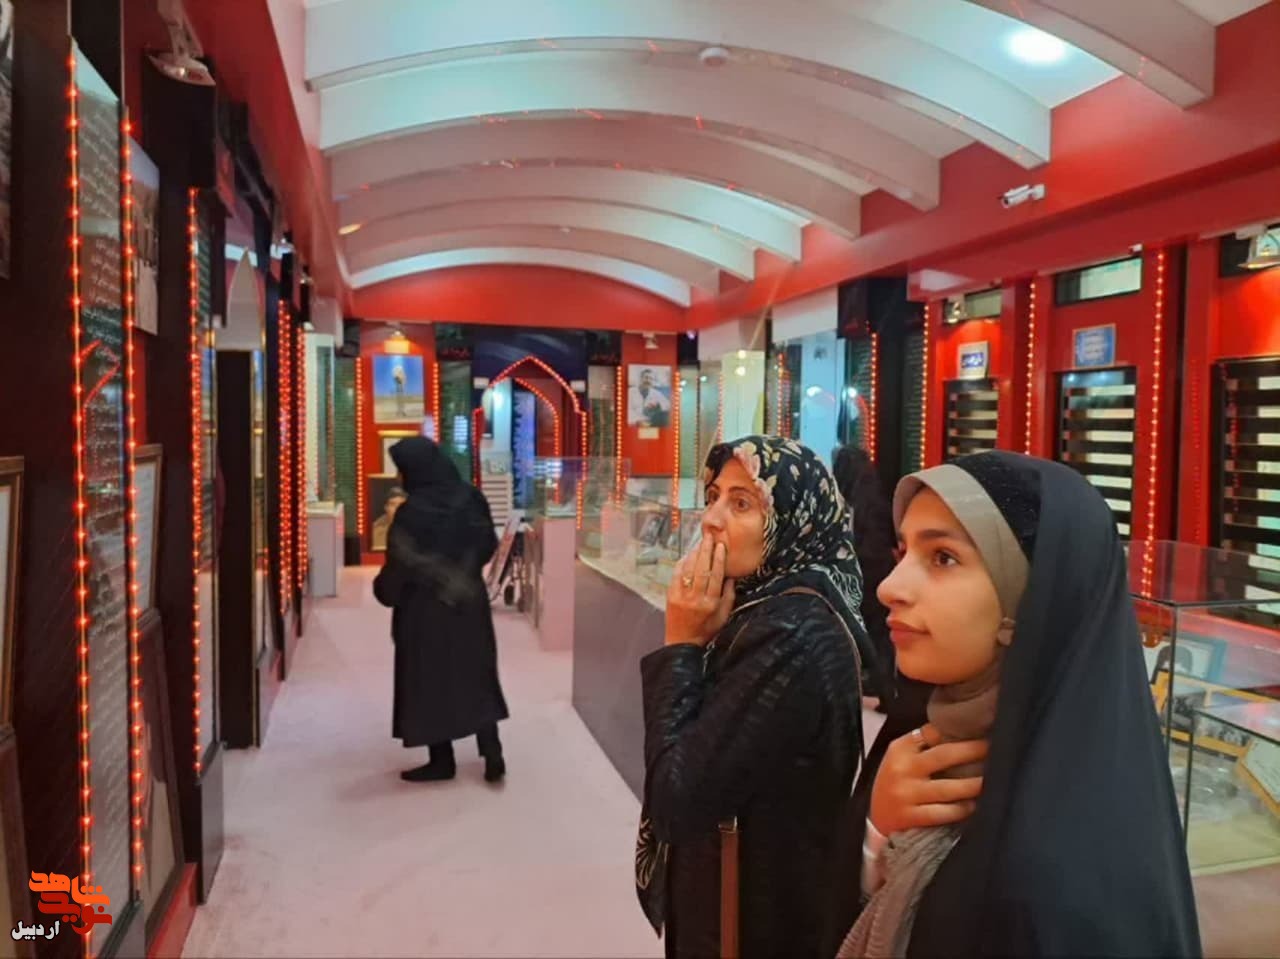 بازدید یک تور اردبیل گردی در قالب فرهنگسرای اصلانیان شهرداری از موزه شهدای اردبیل